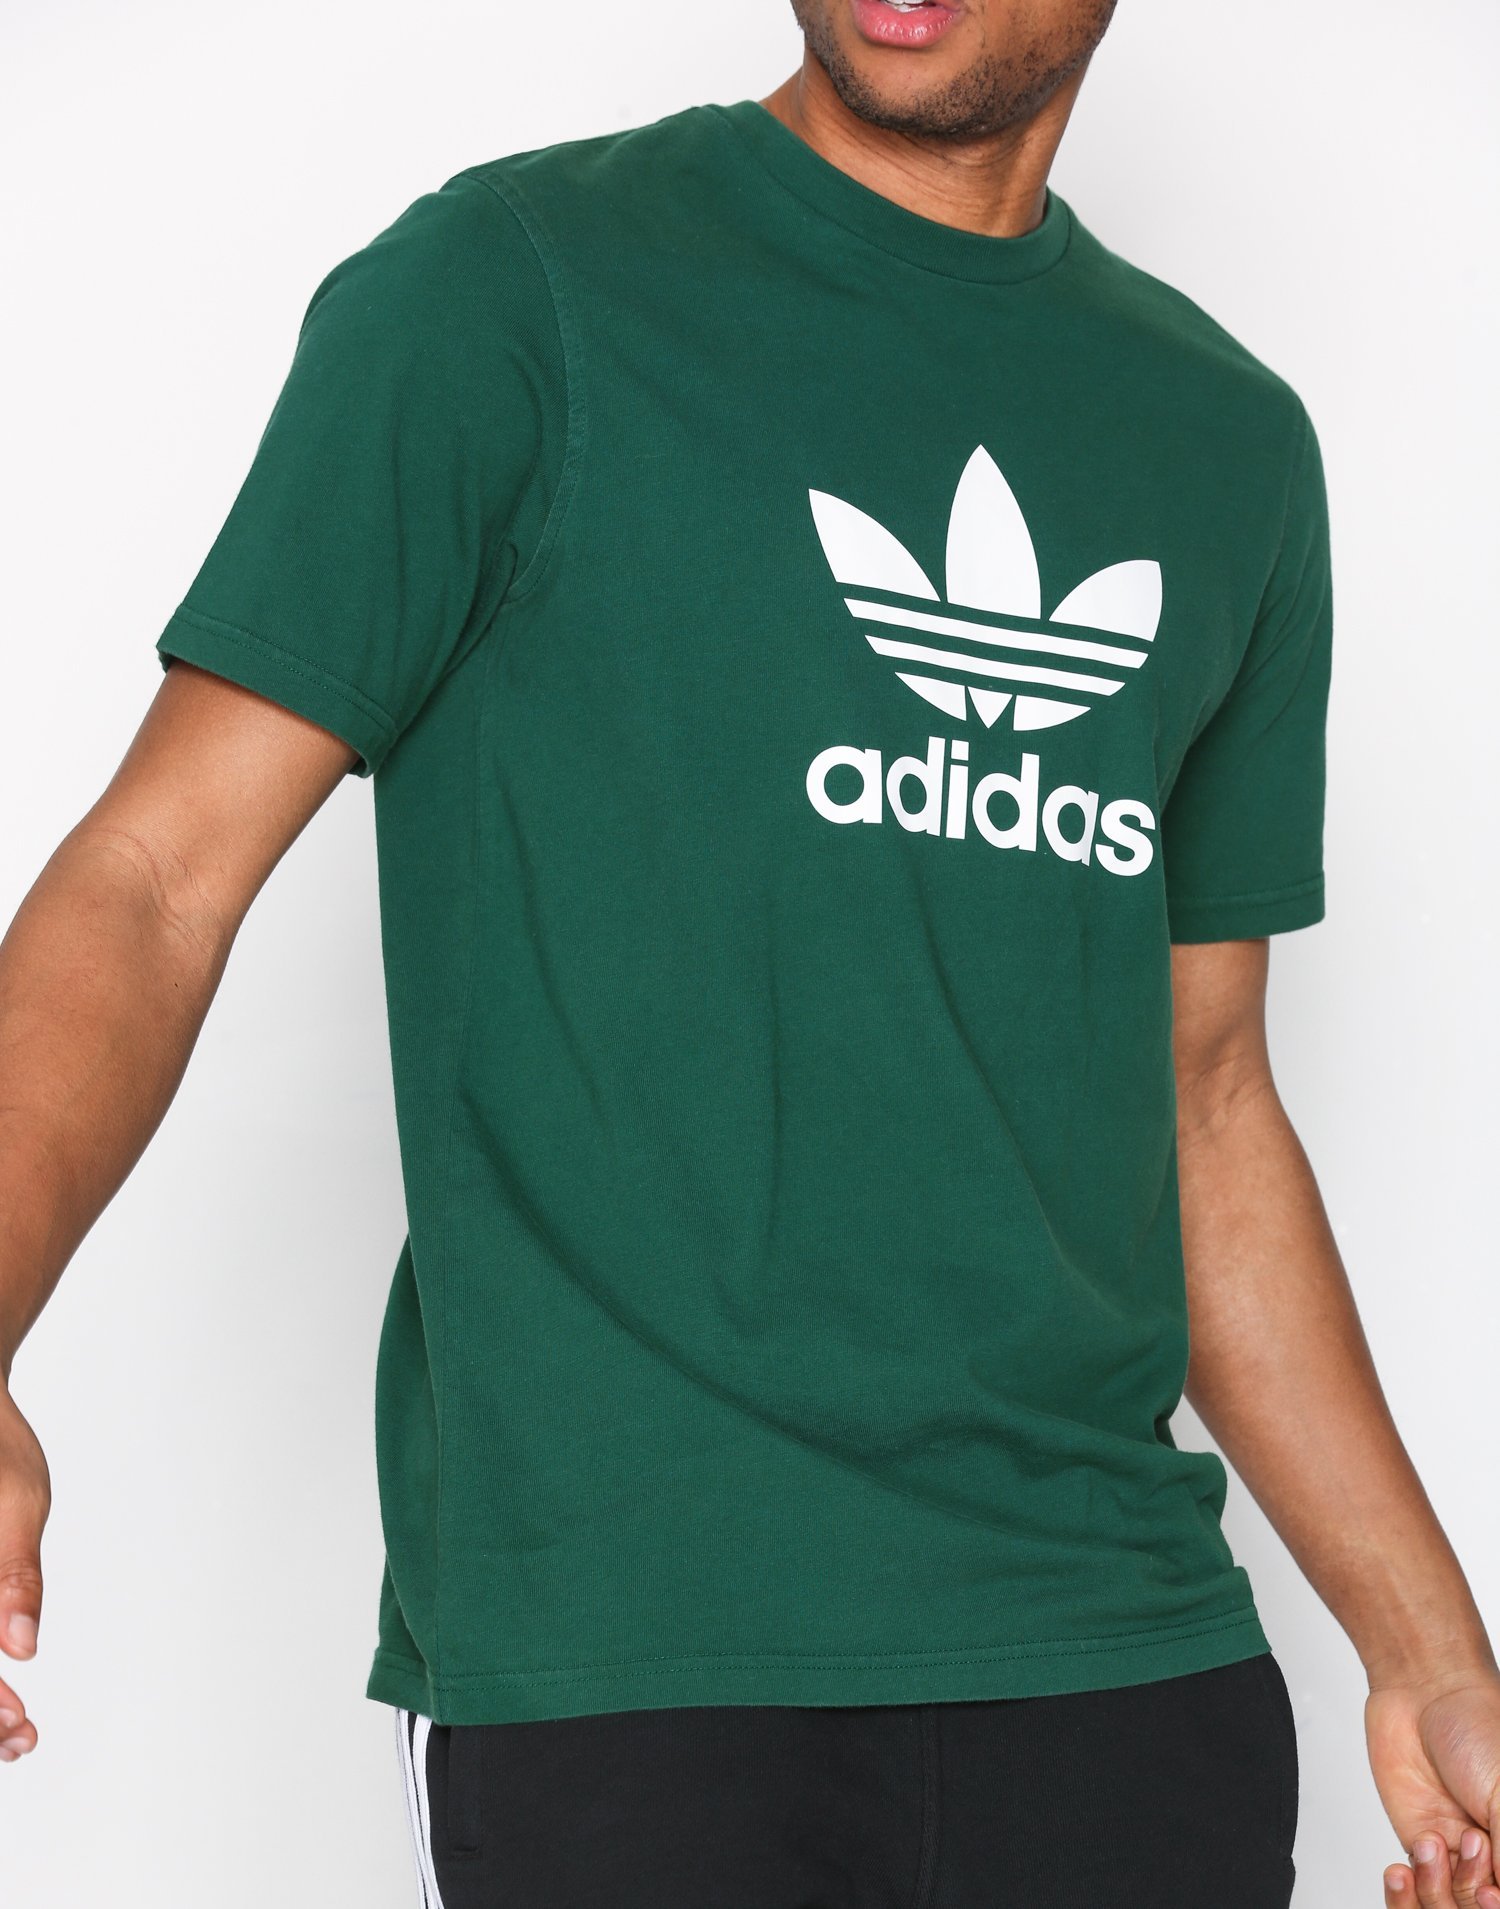 mens green adidas shirt